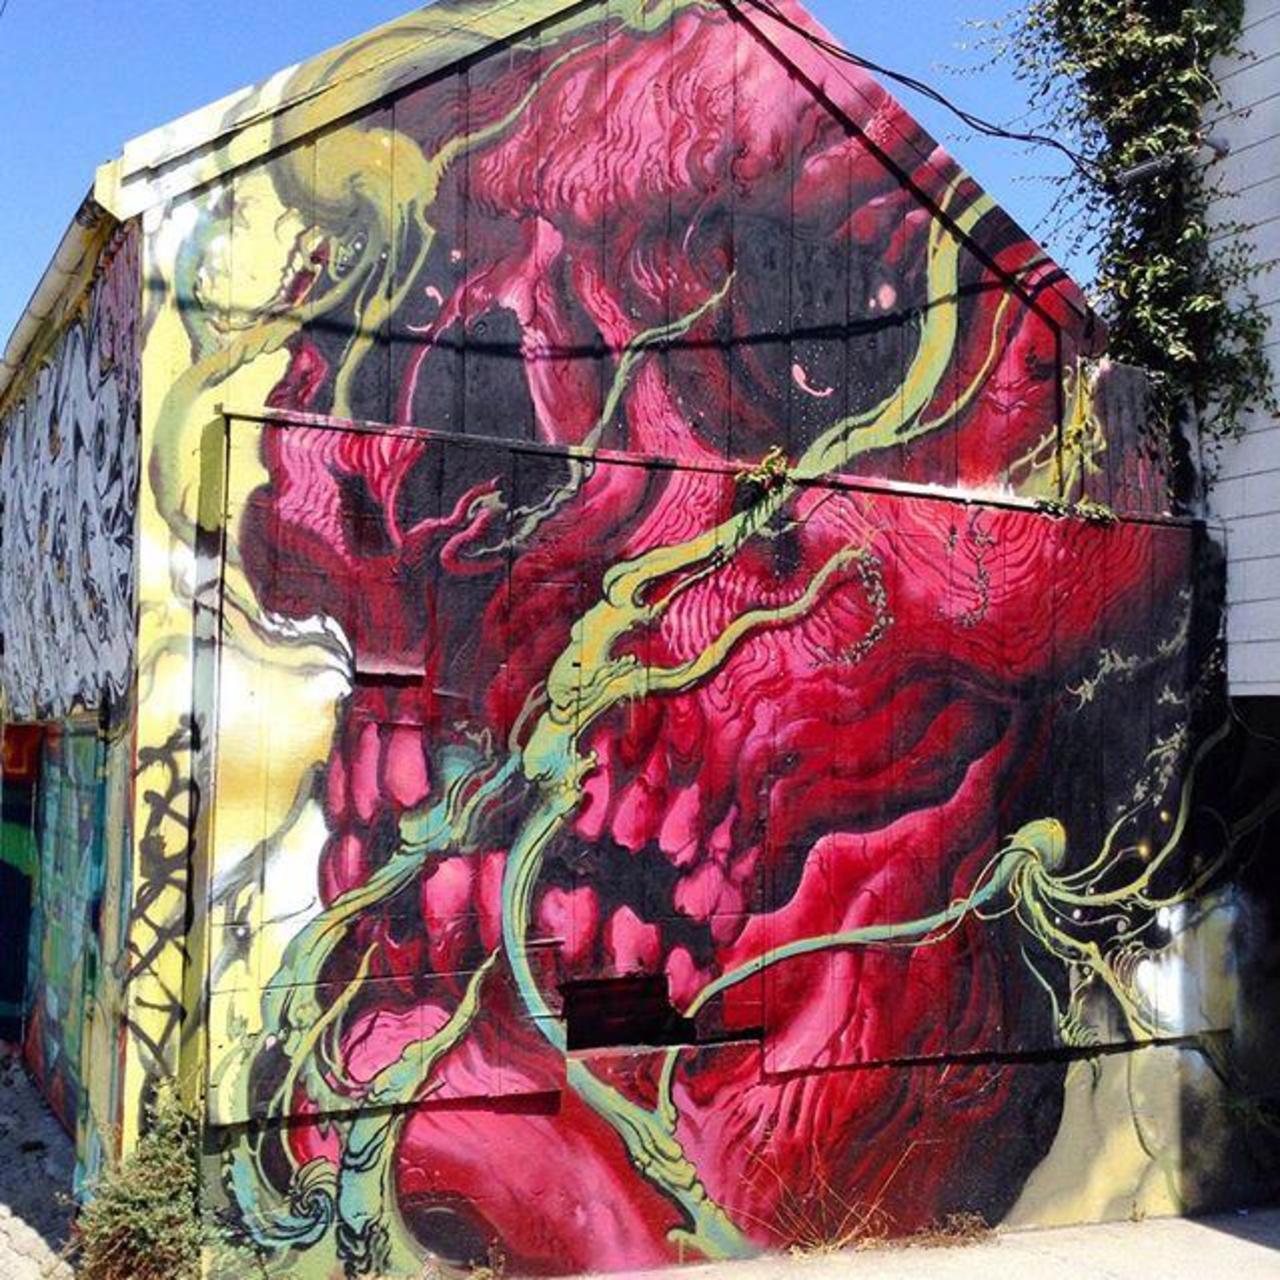 RT GoogleStreetArt: Street Art found in San Francisco  

#art #graffiti #mural #streetart http://t.co/wHnzHbzgWn https://goo.gl/7kifqw